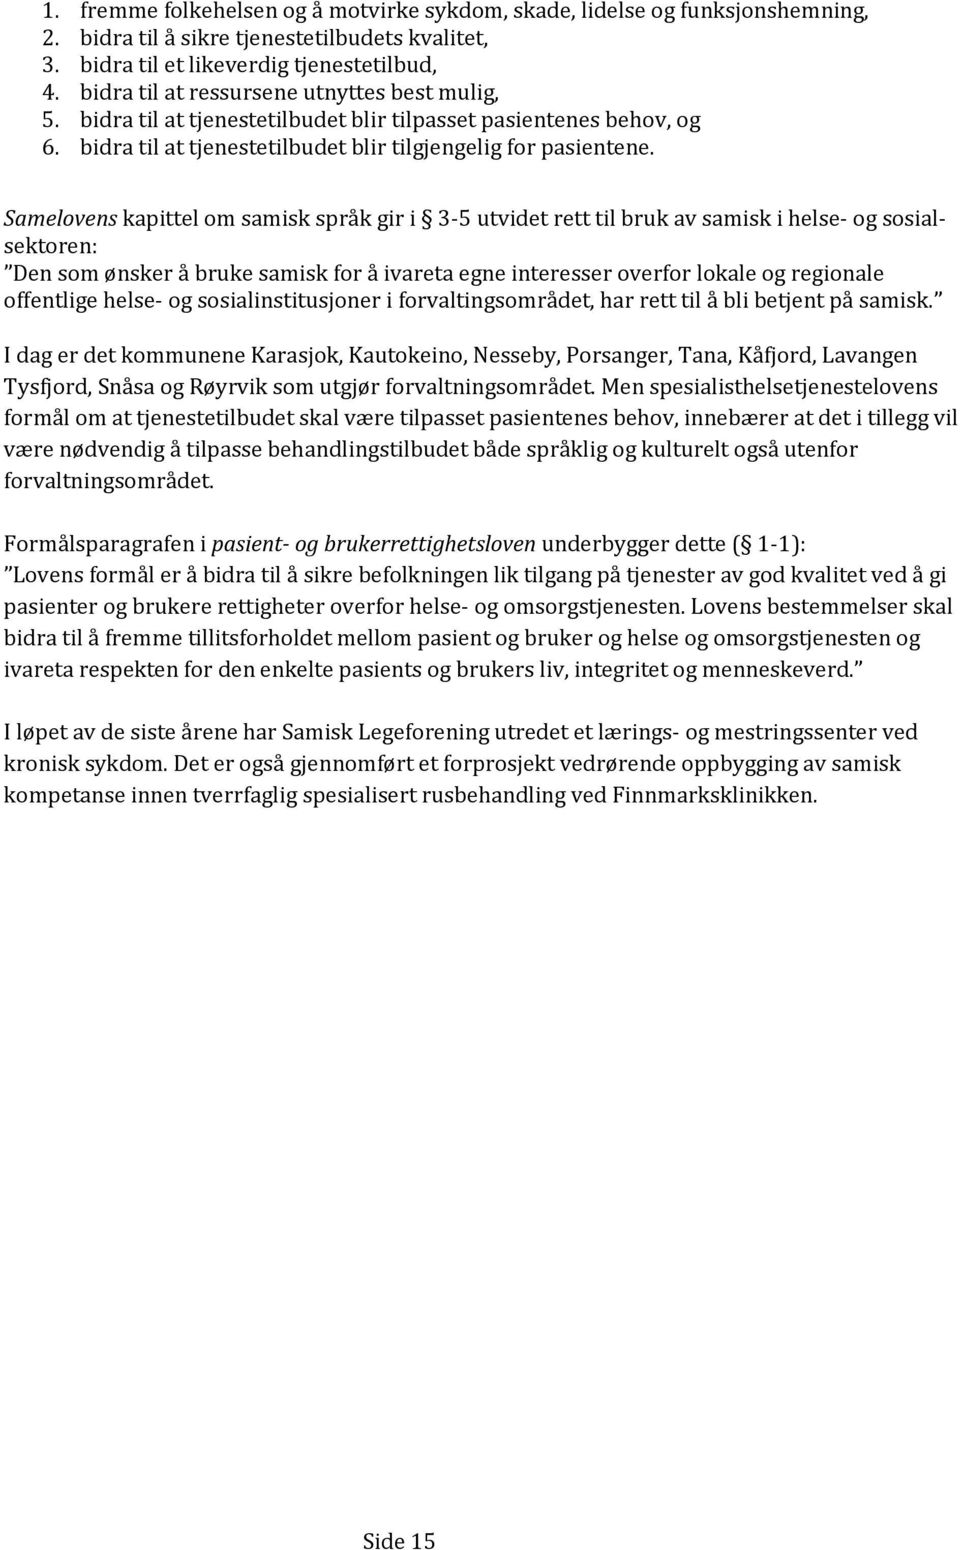 Samelovens kapittel om samisk språk gir i 3-5 utvidet rett til bruk av samisk i helse- og sosialsektoren: Den som ønsker å bruke samisk for å ivareta egne interesser overfor lokale og regionale